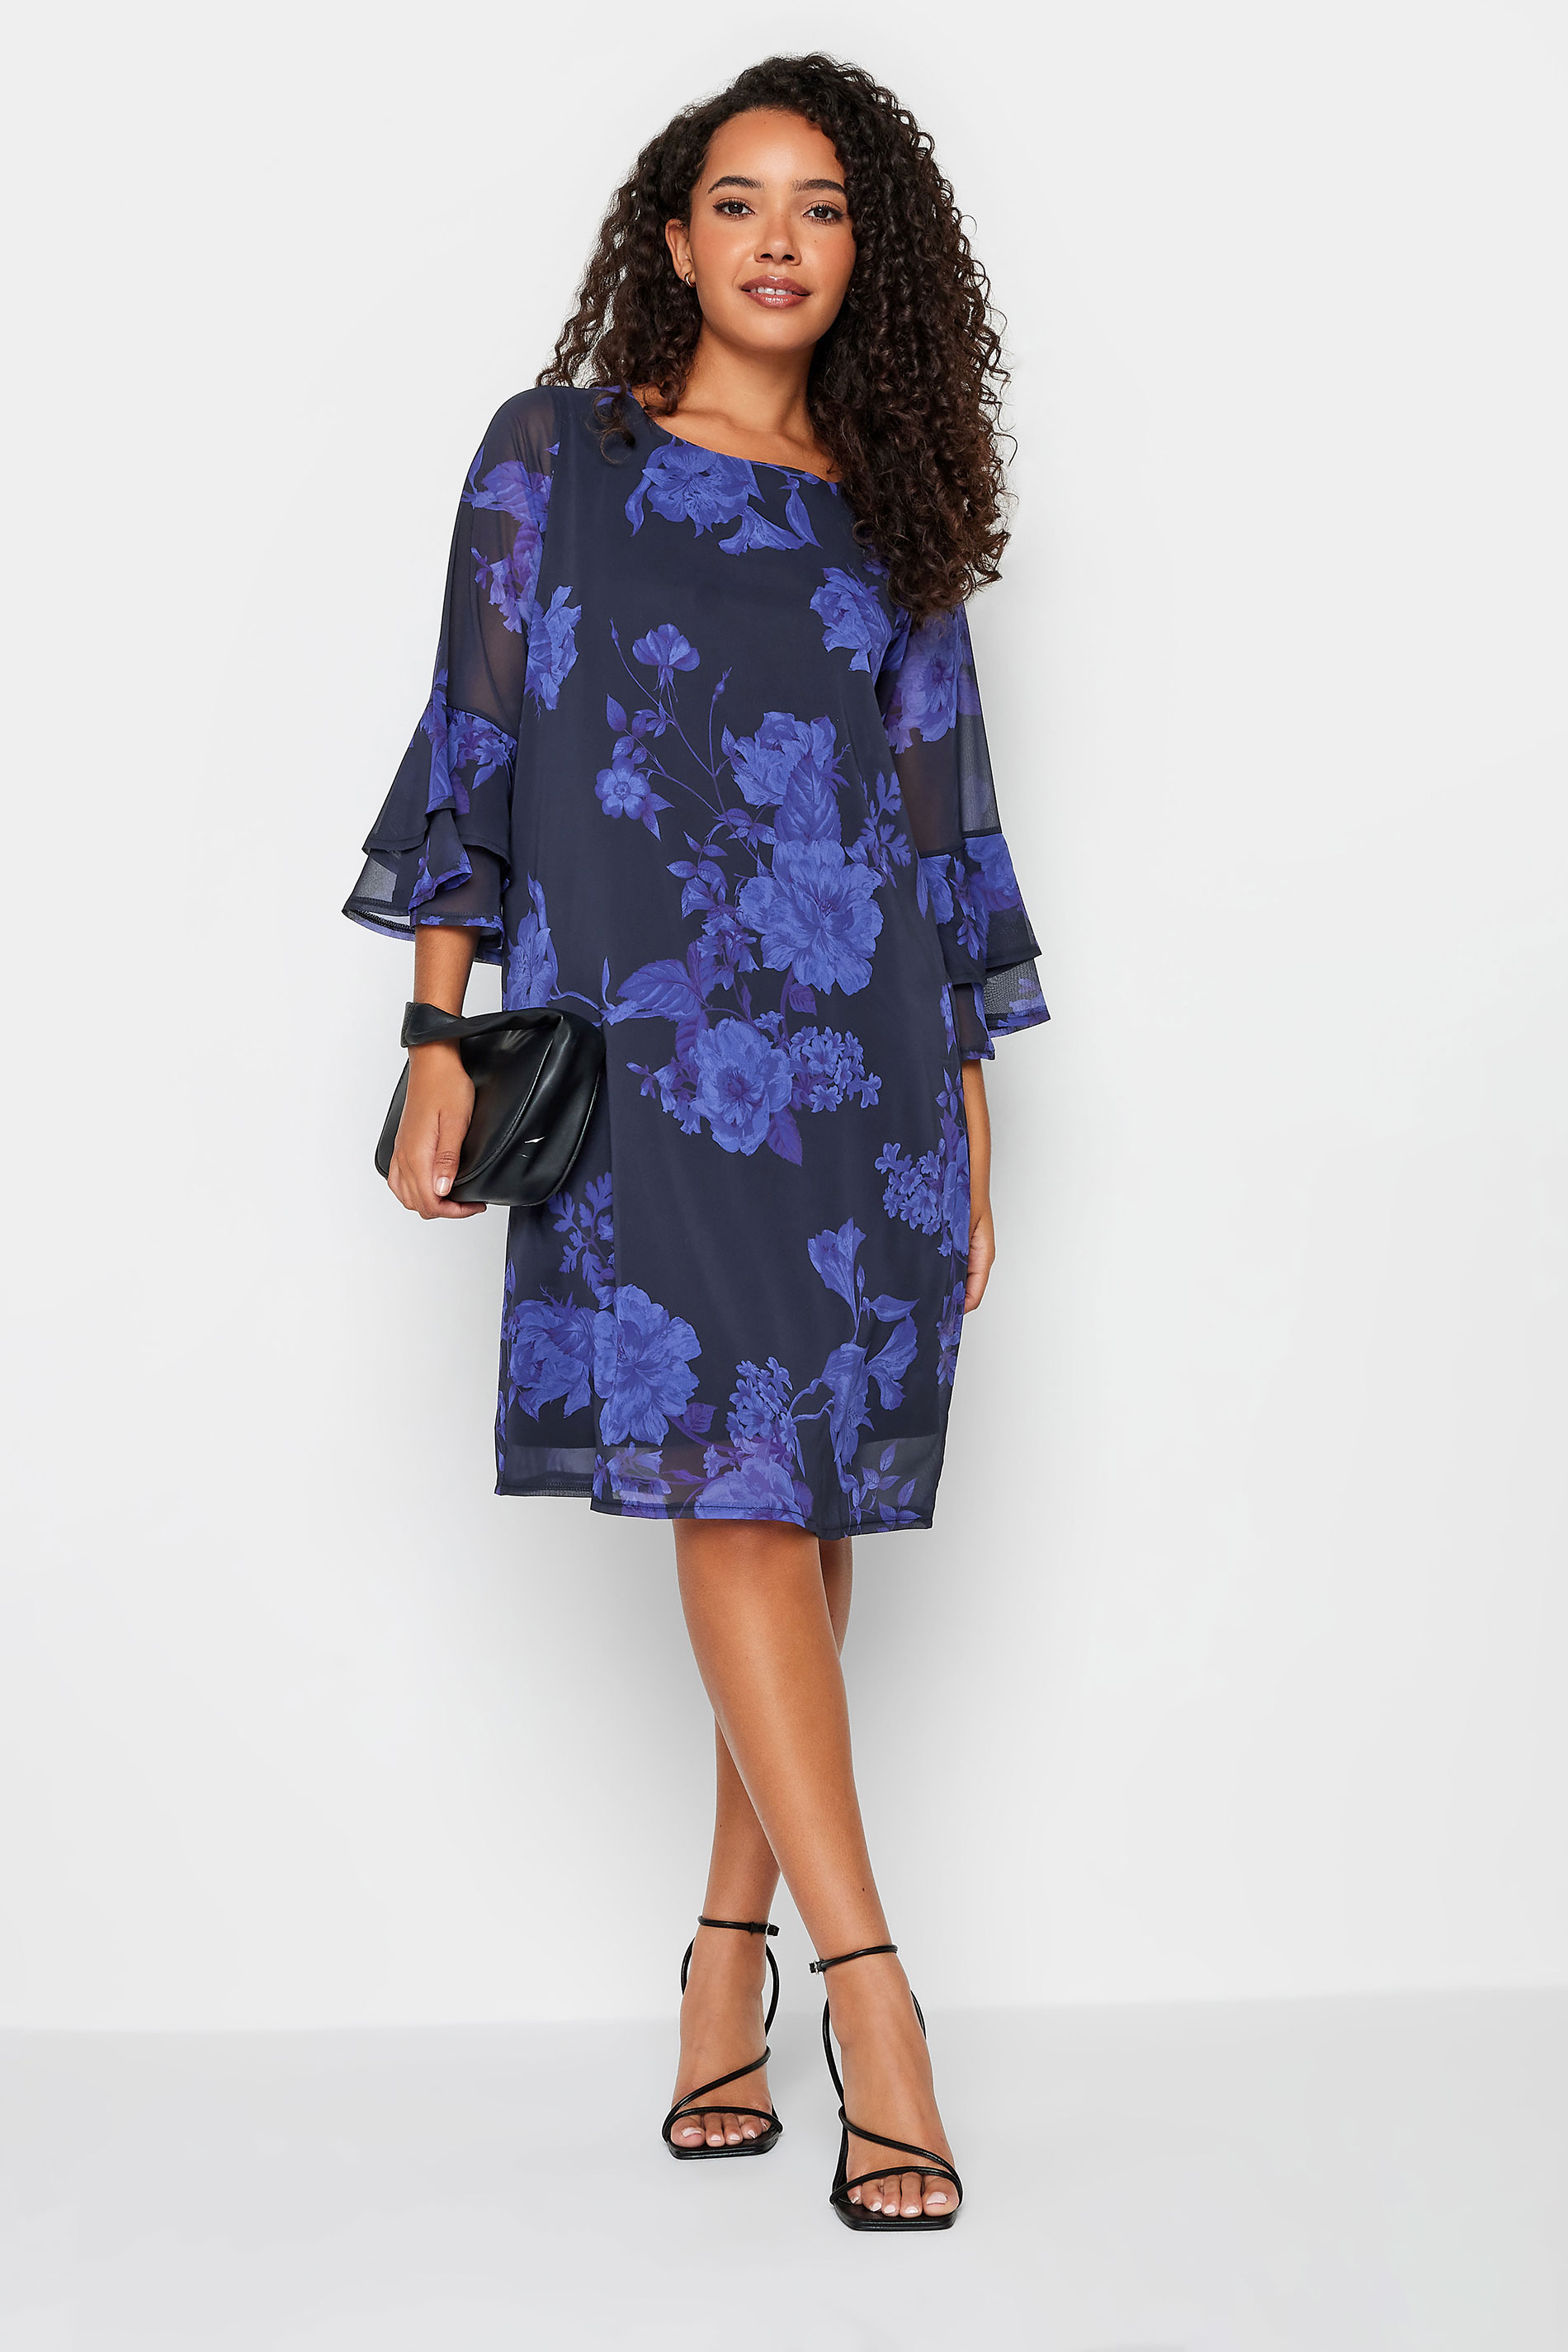 M&Co Black & Purple  Floral Print Flute Sleeve Shift Dress | M&Co 2